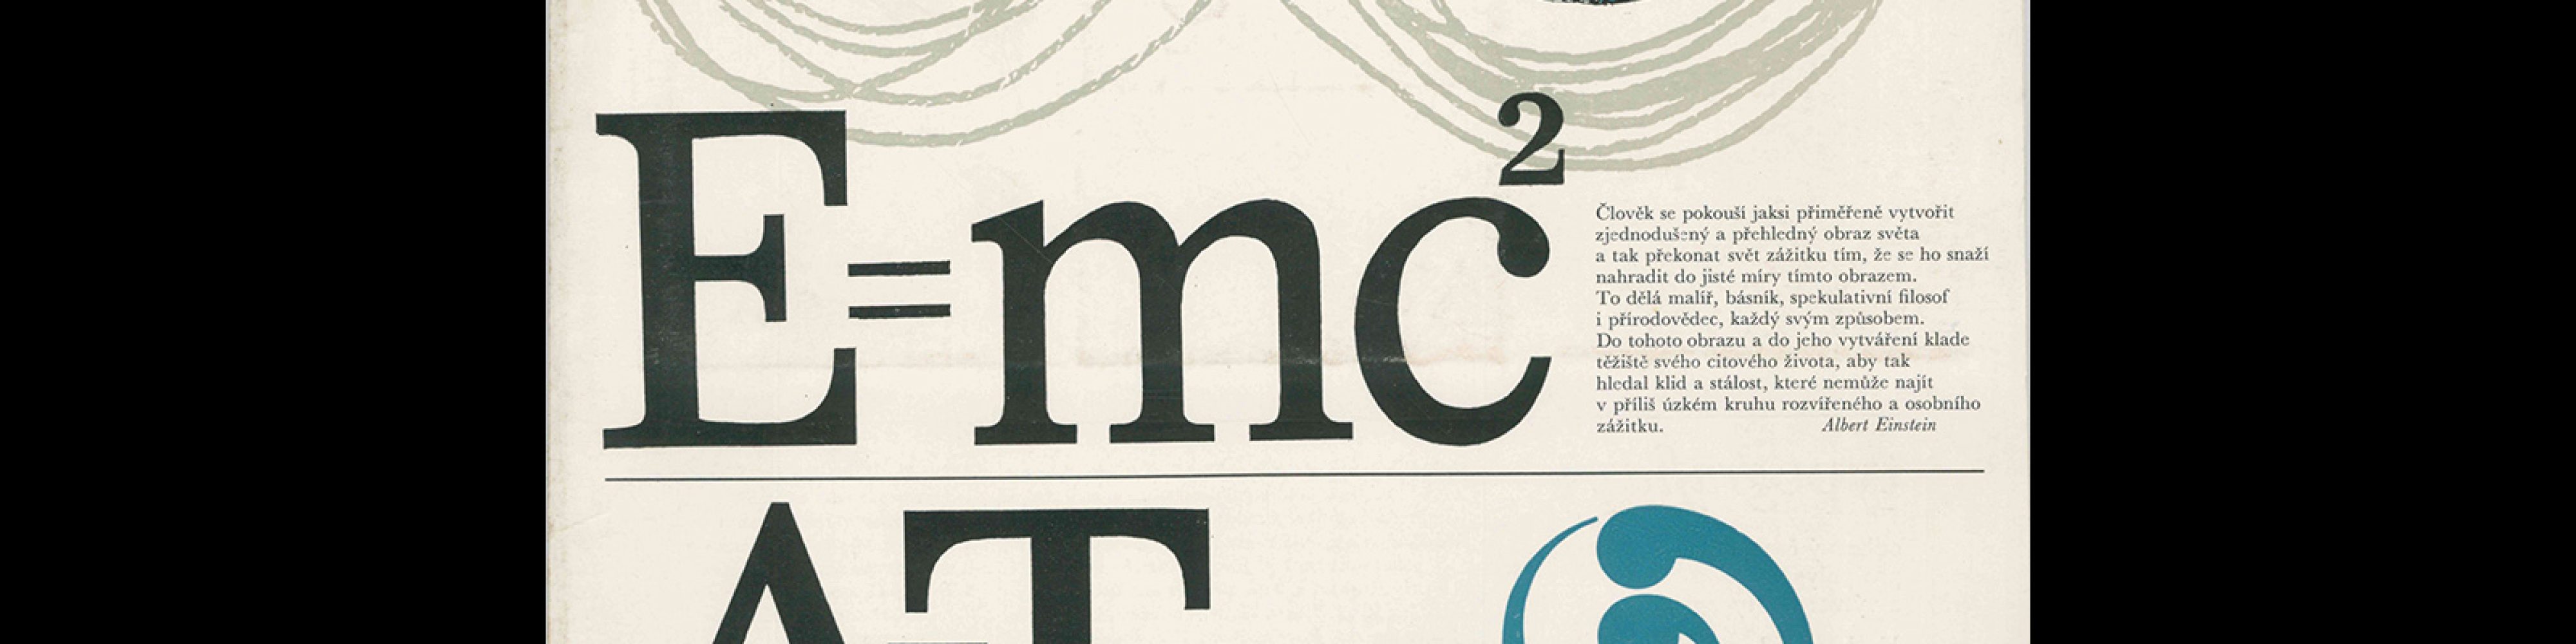 Typografia, ročník 71, 11-12, 1968. Cover design by Jiří Rathouský